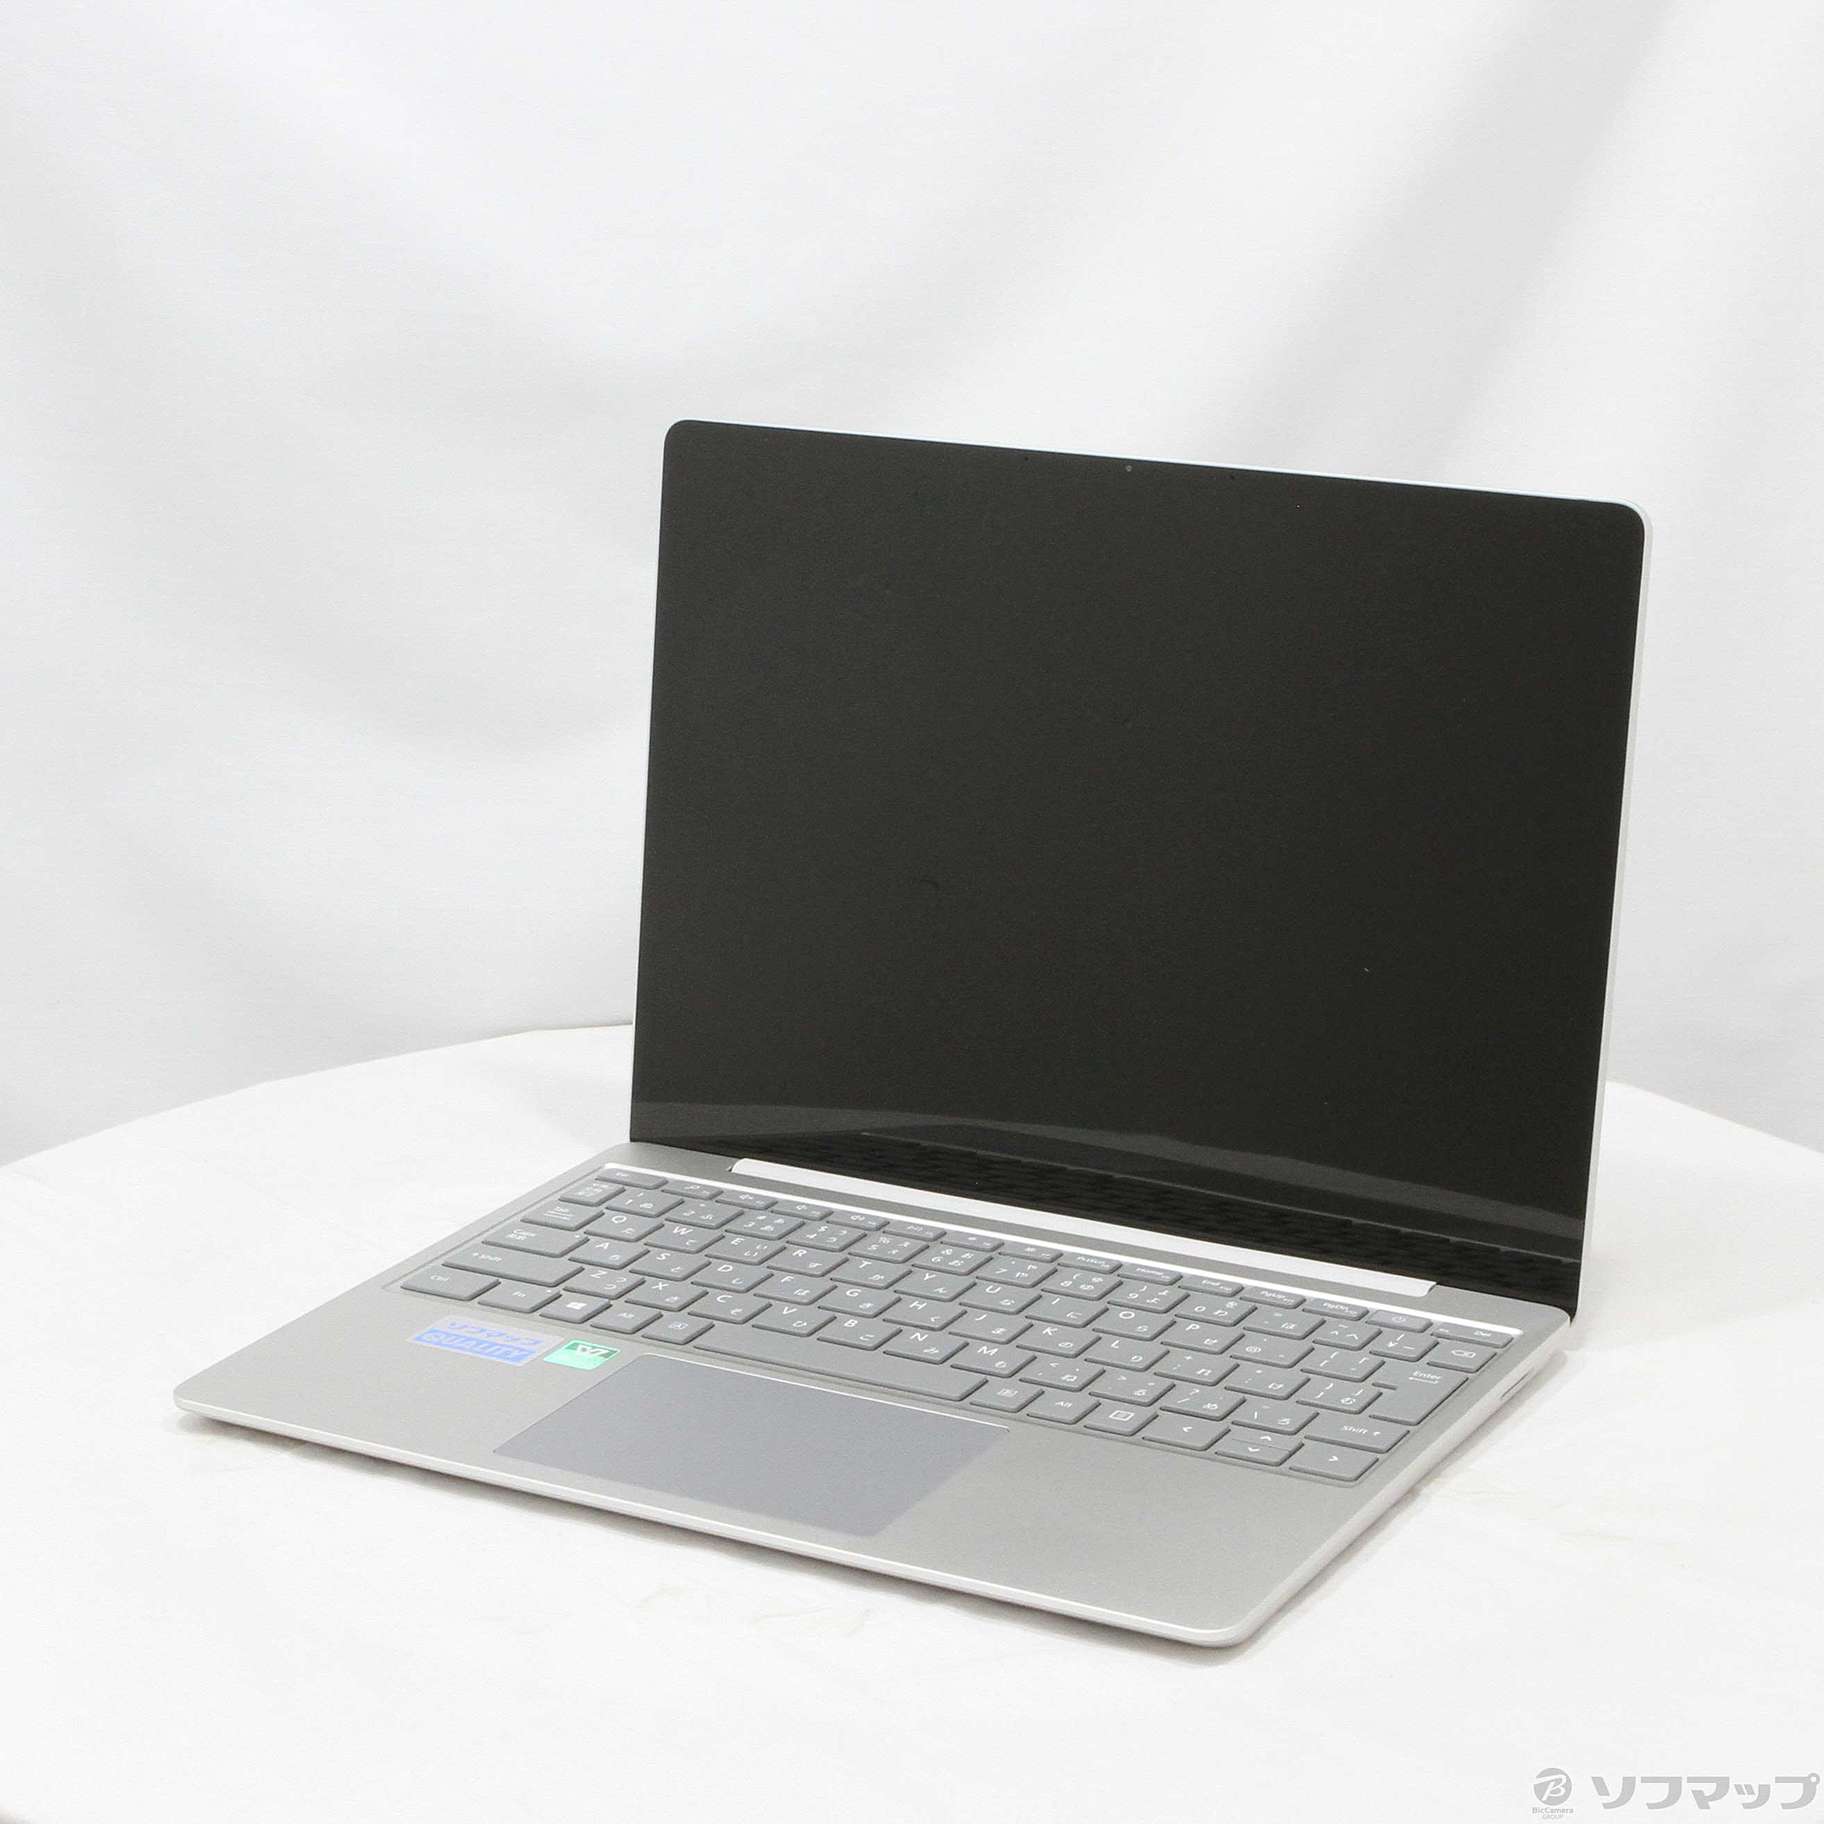 新品未開封 マイクロソフト THJ-00020 SurfaceLaptop Go